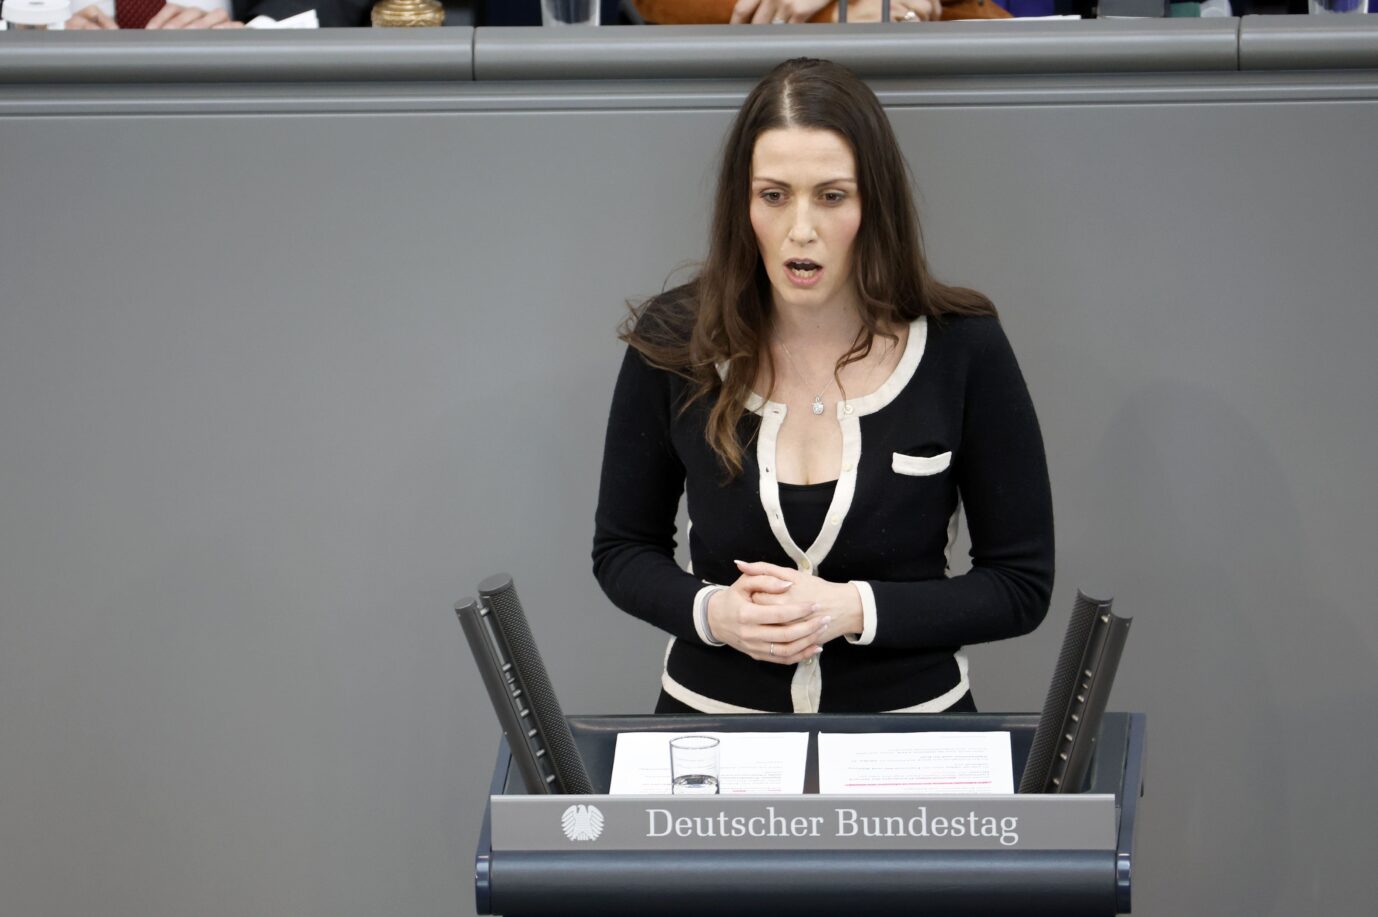 Durchsuchungsbeschluß und Steuerhinterziehung: Schwere Vorwürfe gegen die FDP-Abgeordnete Nicole Bauer.